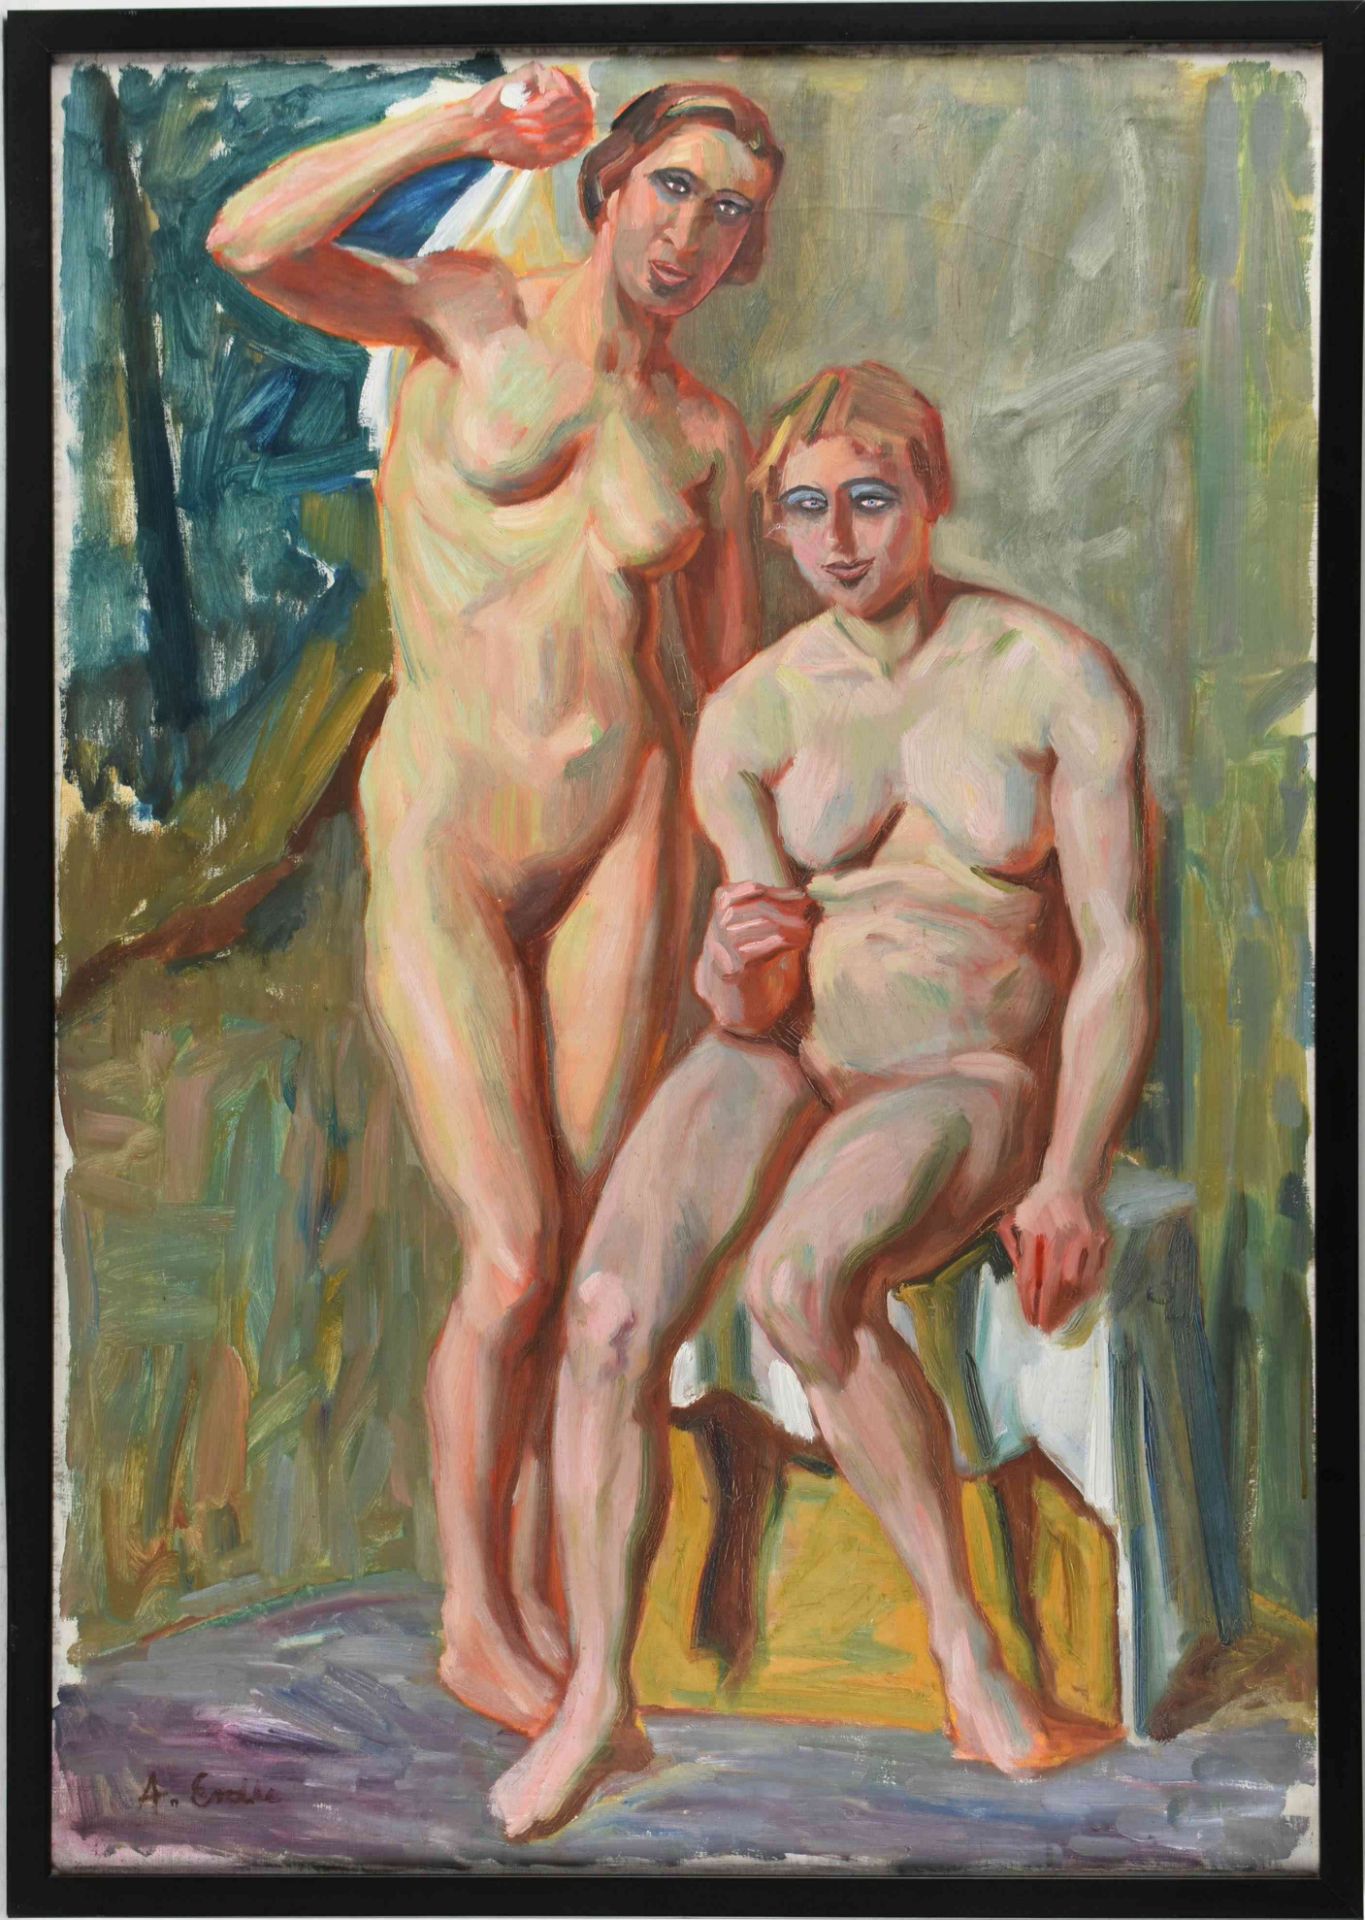 Erdke, A. Öl/Lwd., zwei Frauenakte, links unten signiert, gerahmt, mit Rahmung ca. 104 x 74 cm - Bild 3 aus 4